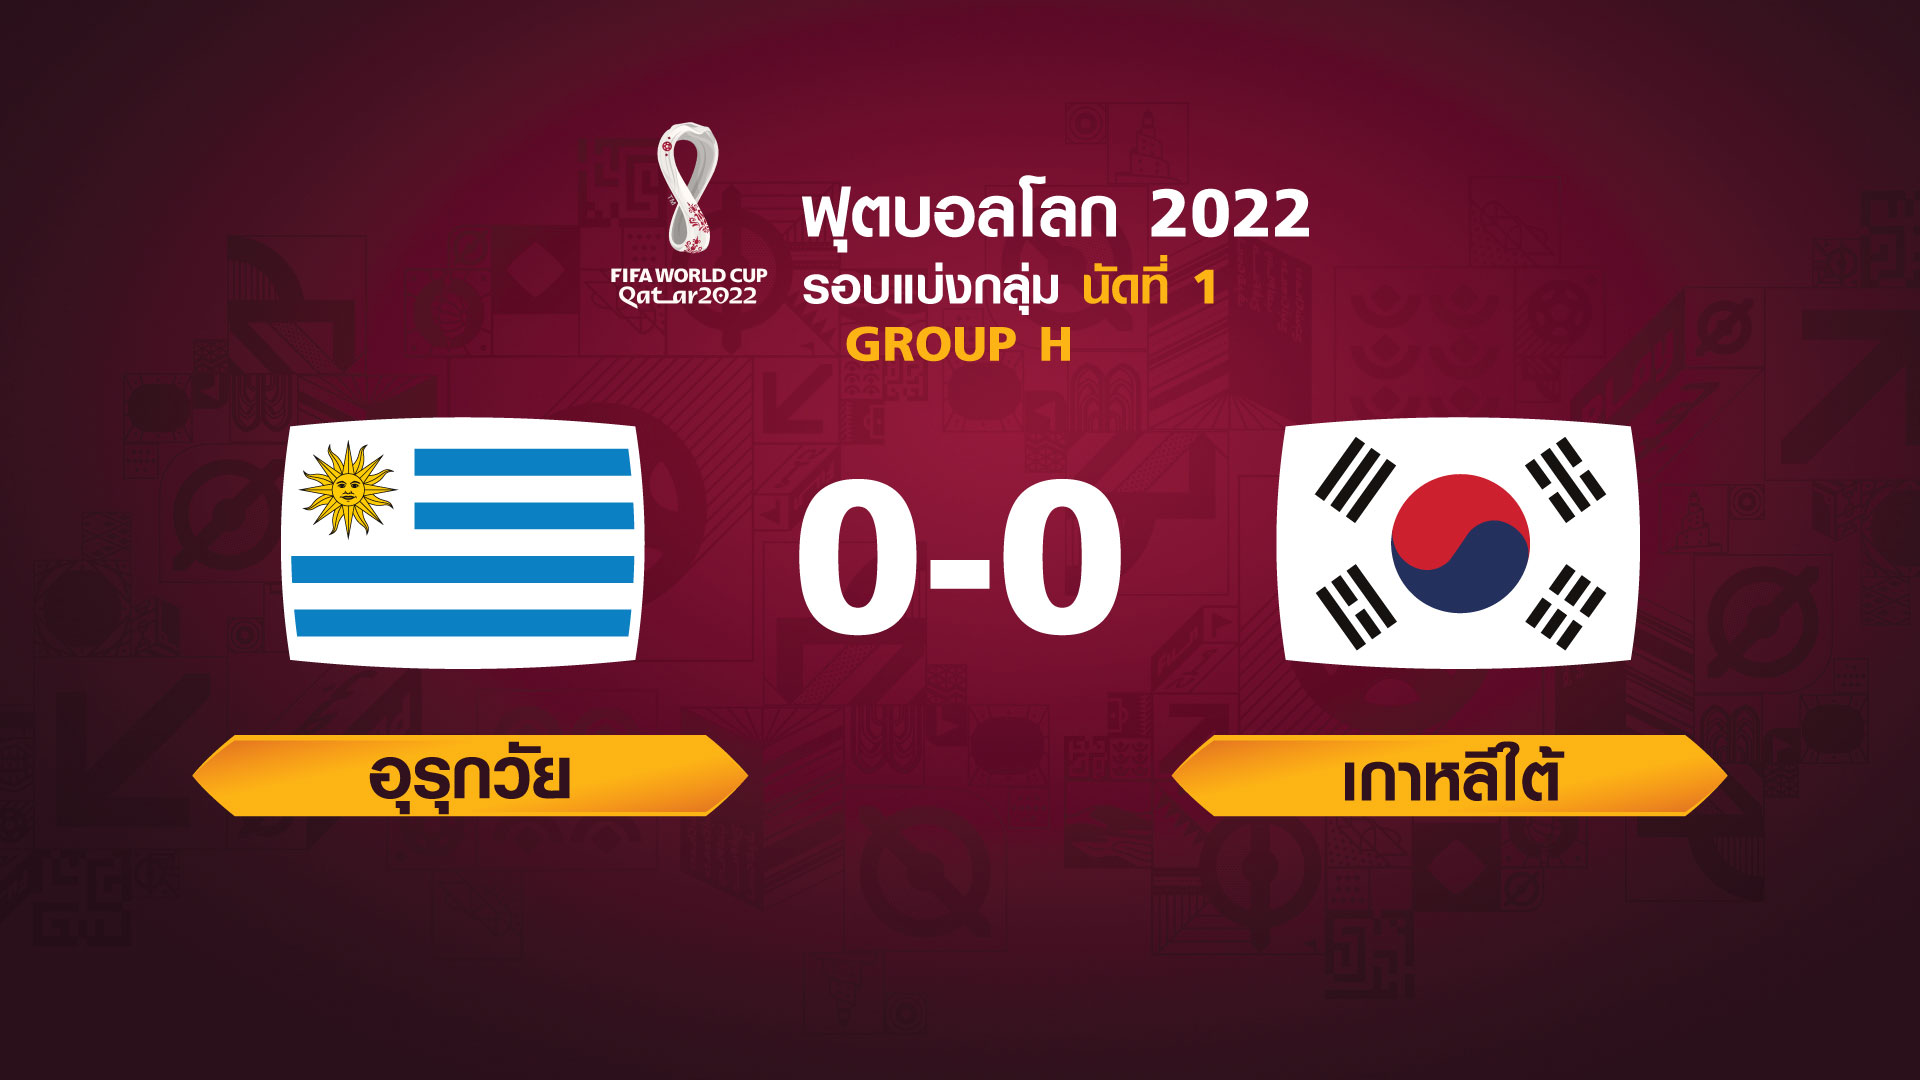 ฟุตบอลโลก 2022 รอบแบ่งกลุ่ม นัดแรก ระหว่าง Uruguay vs Korea Republic